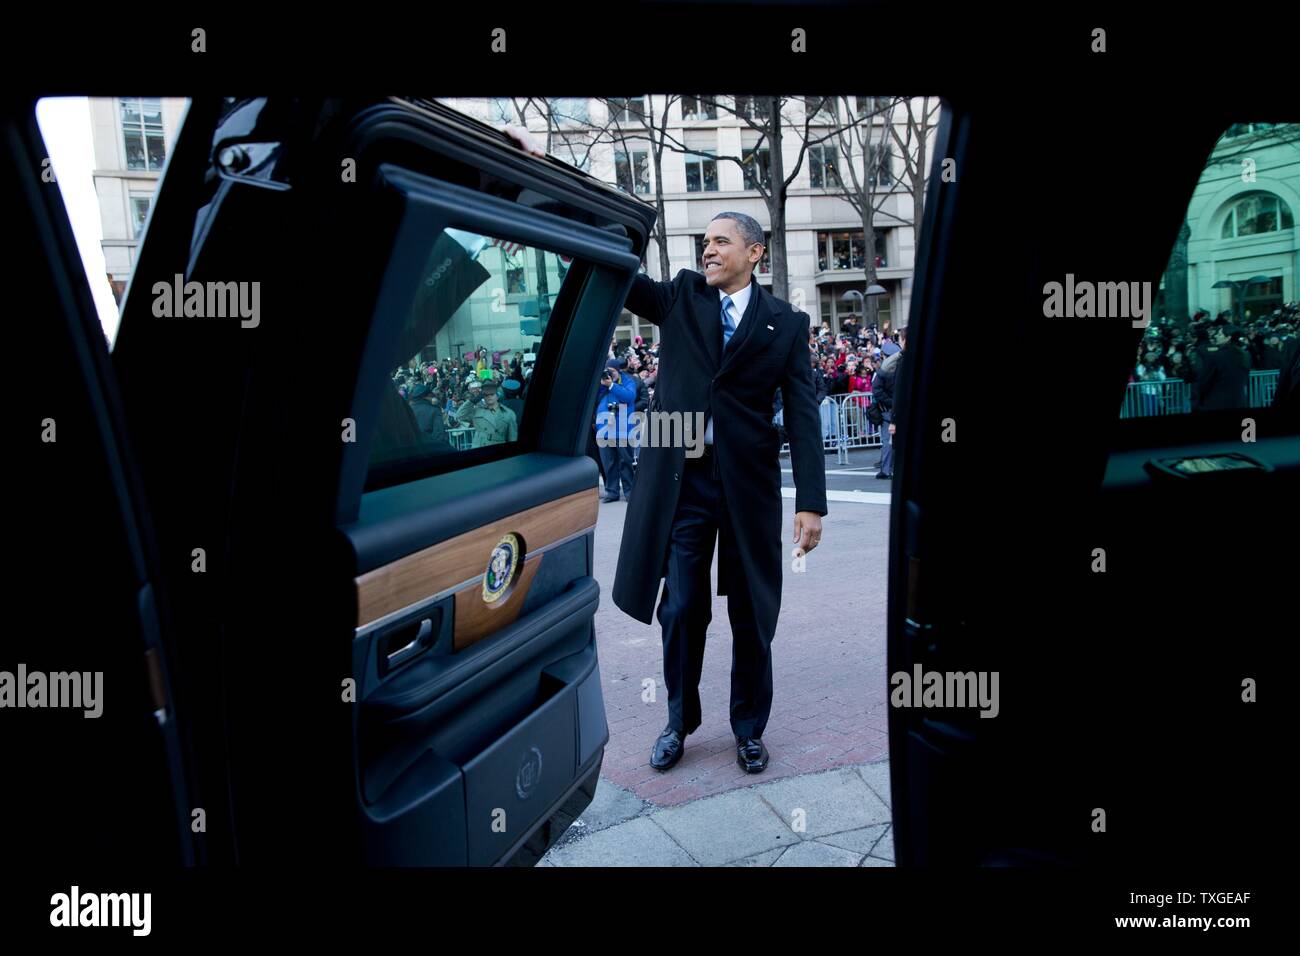 Photographie du Président Barack Obama forme d'ornithologues de la parade d'inauguration présidentielle. Datée 2013 Banque D'Images